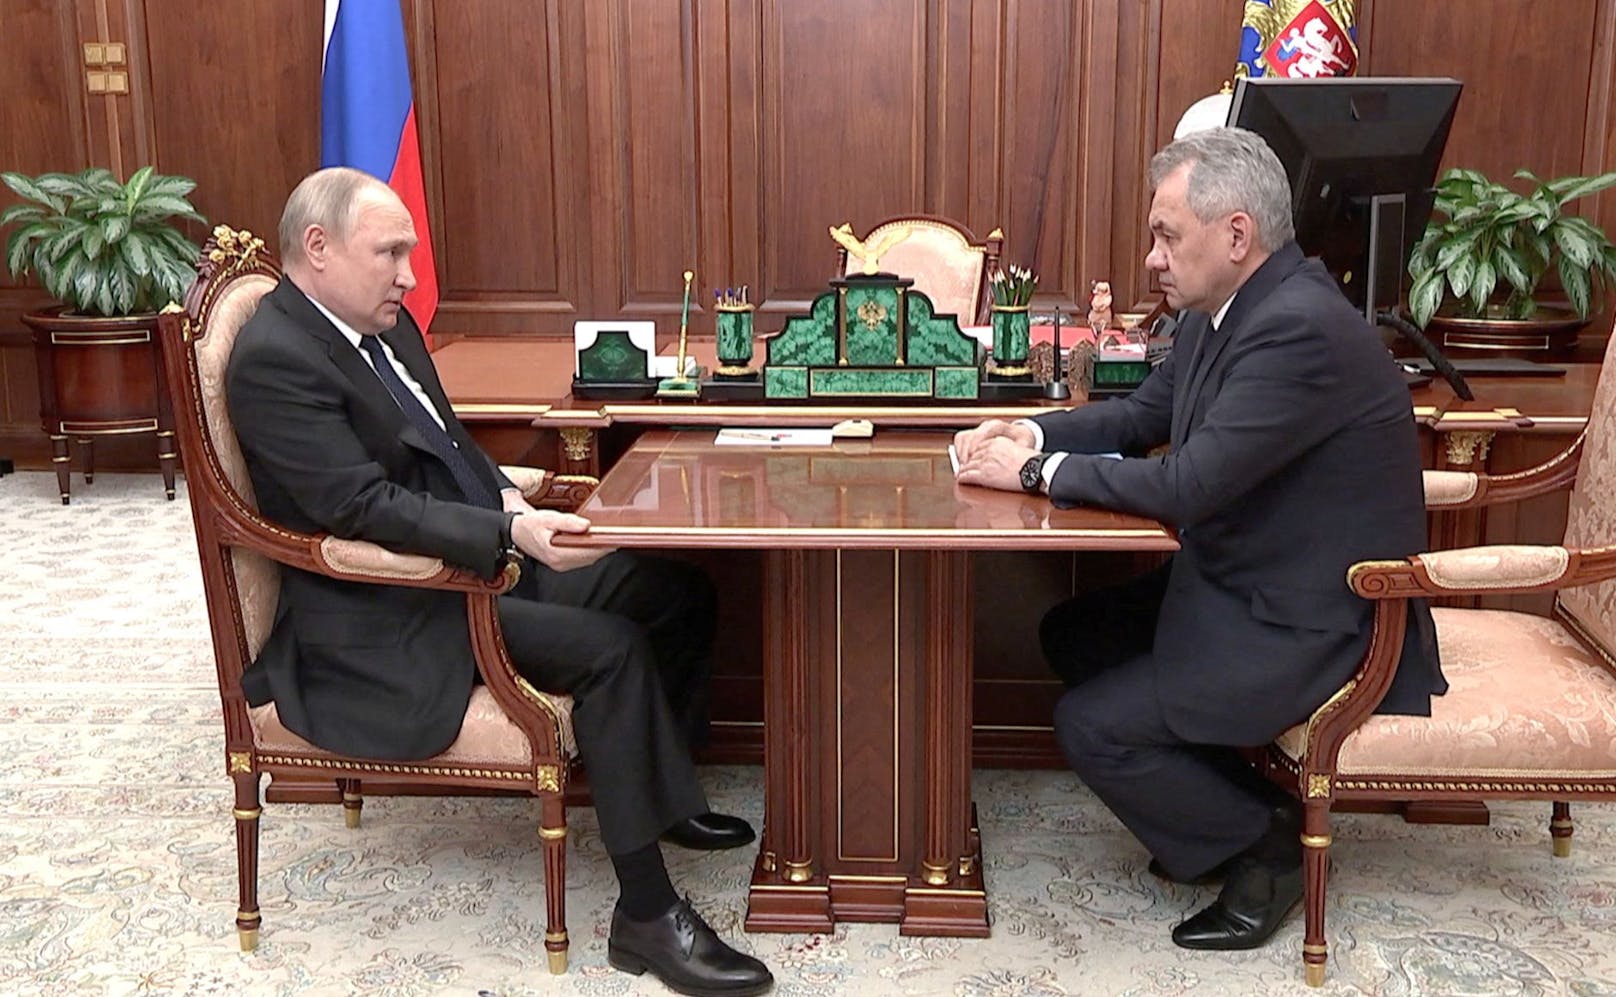 Wladimir Putin mit Verteidigungsminister Sergei Schoigu. Putins seltsame Haltung sorgte für Spekulationen über seine Gesundheit.